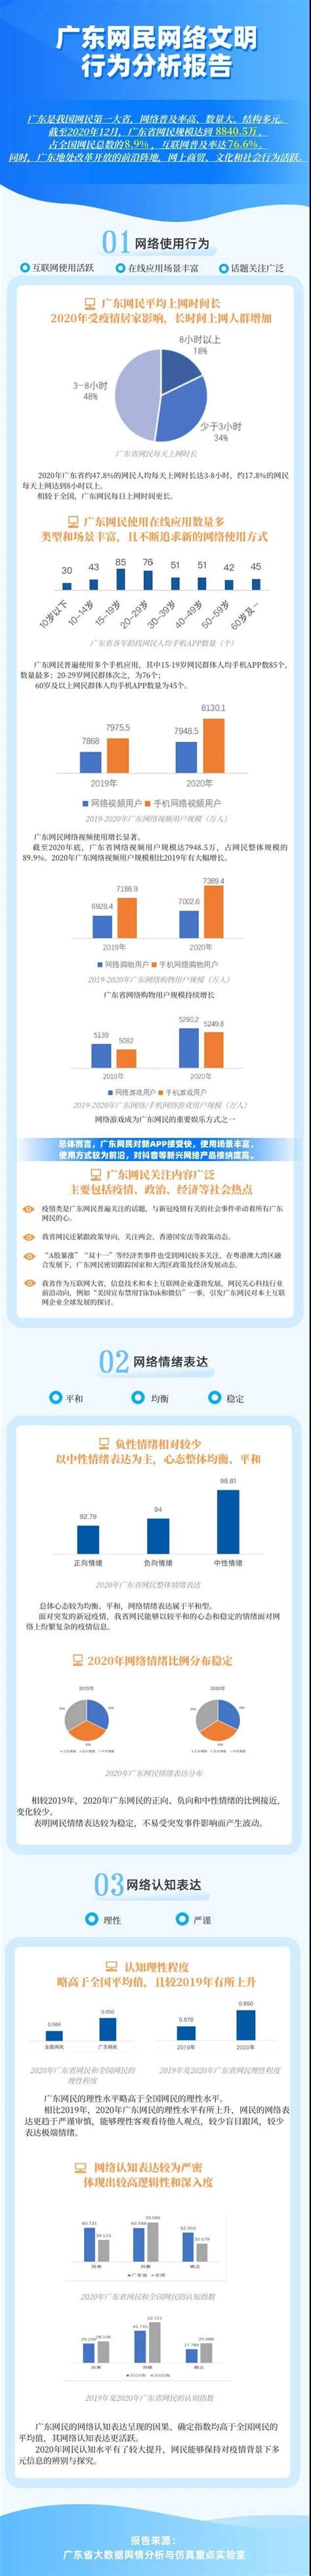 广东网民规模达8840.5万，居全国第一！_中山网络文化协会